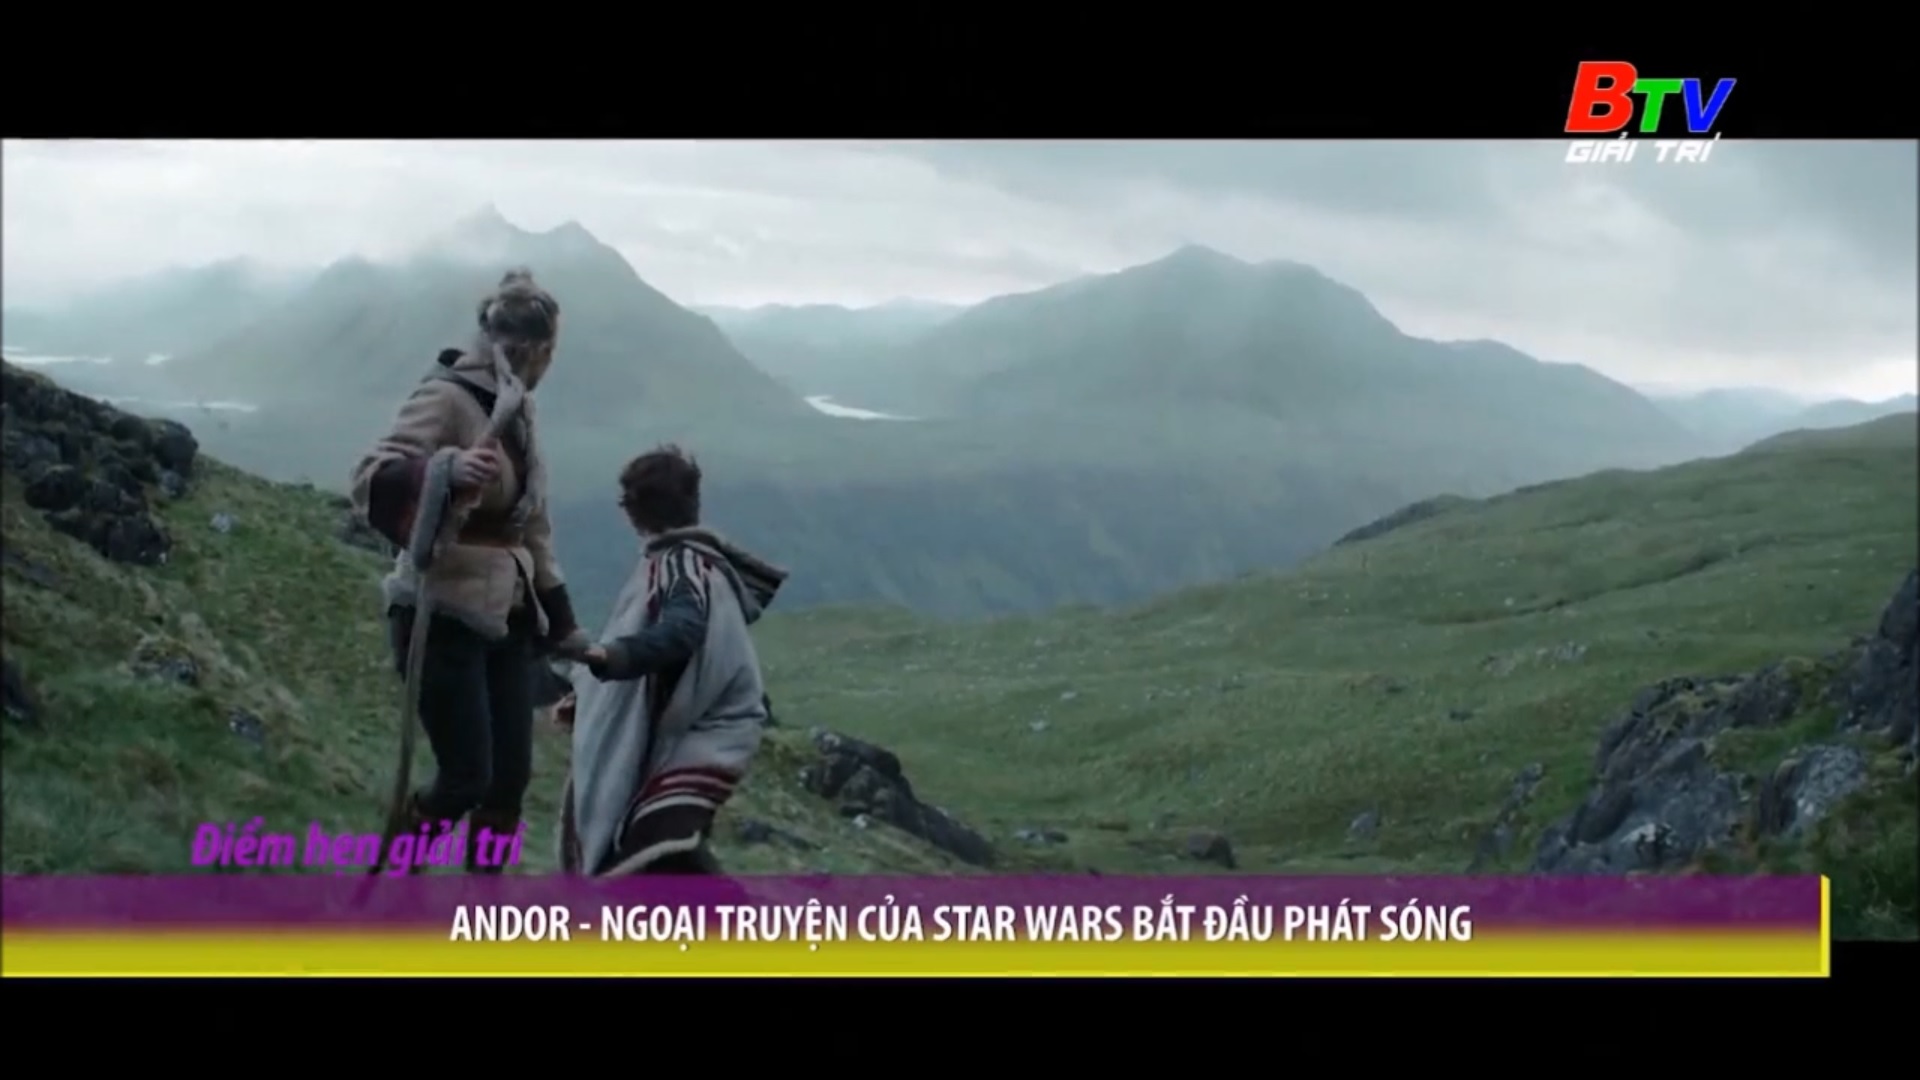 Andor – Ngoại truyện của Star Wars bắt đầu phát sóng